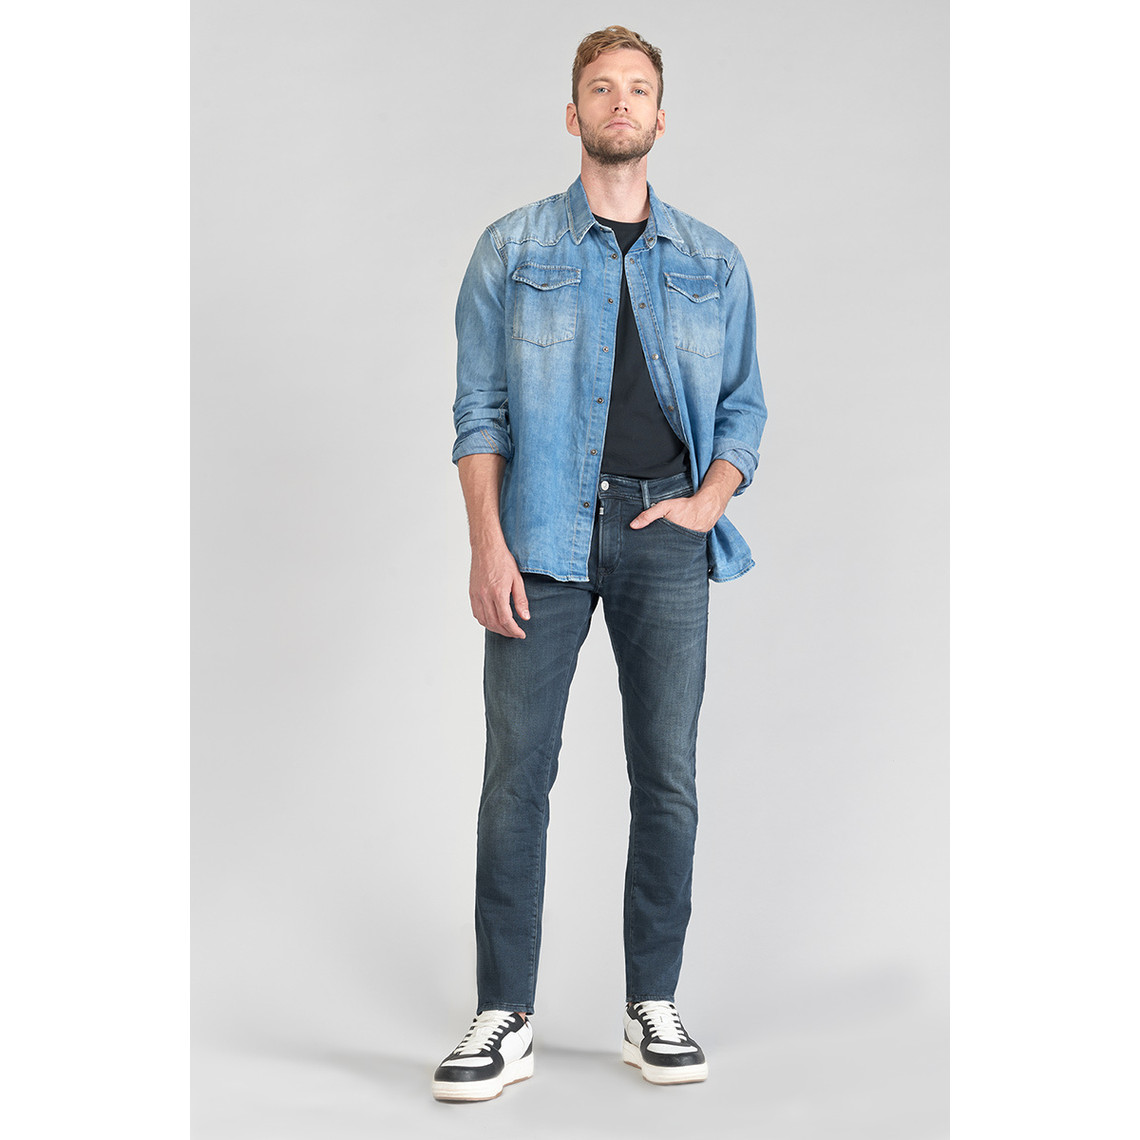 Jeans ajusté BLUE JOGG 700/11, longueur 34 bleu en coton Sean